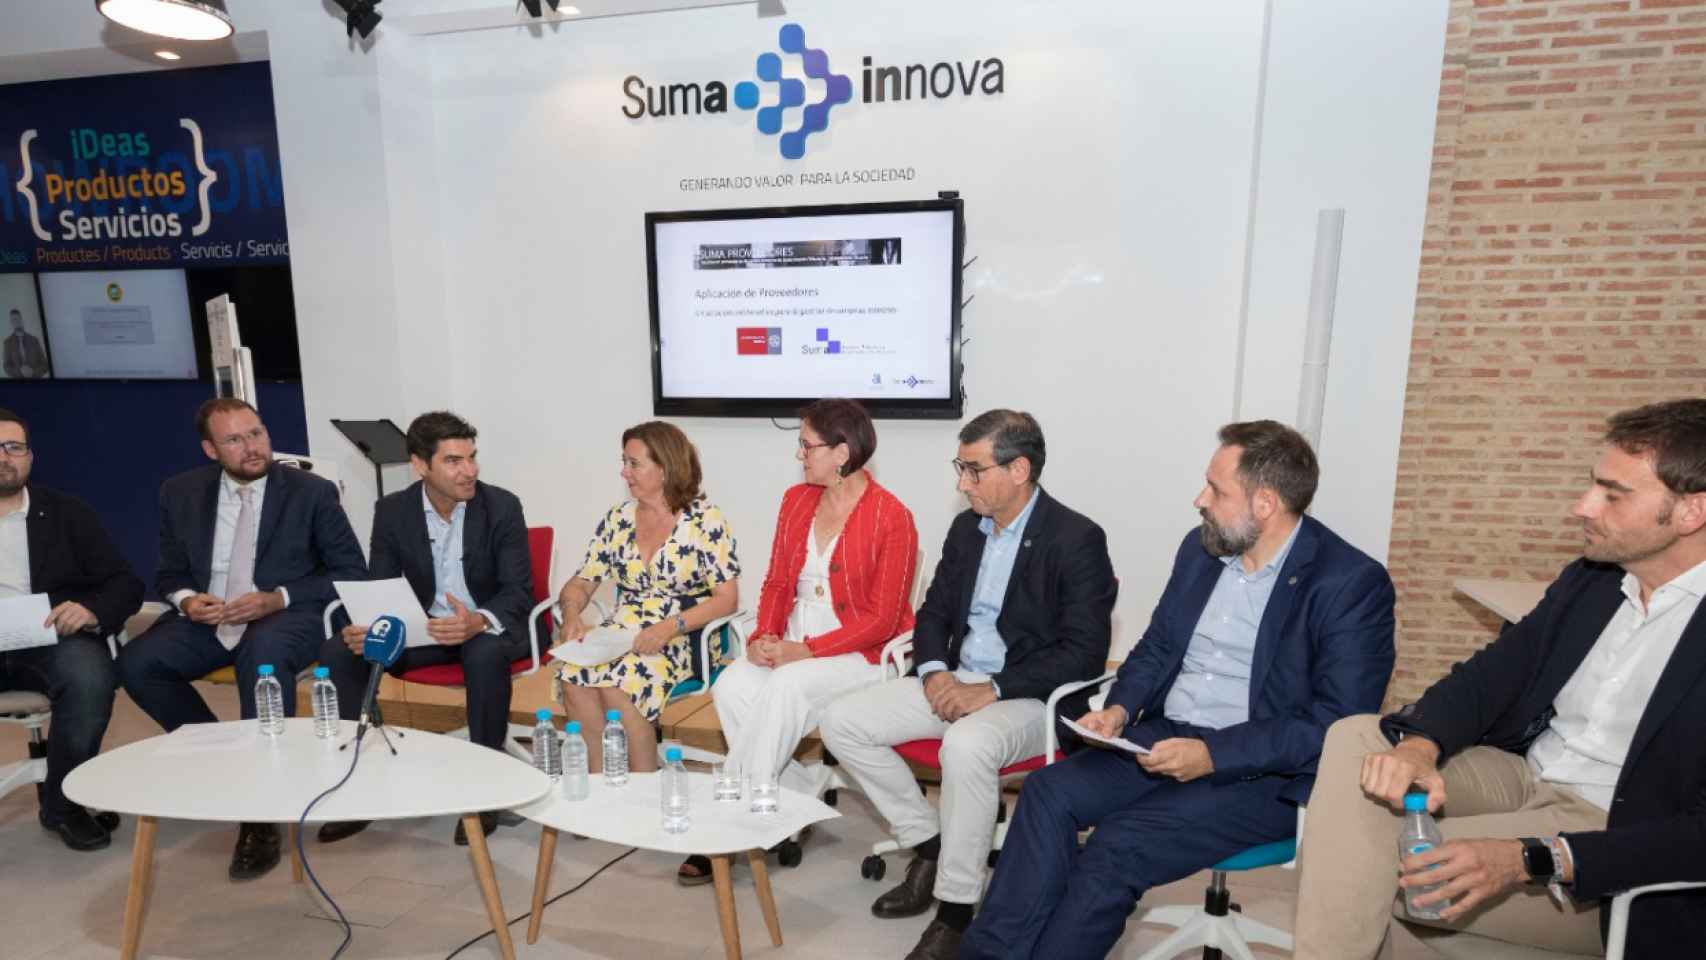 Debate de presentación en SUMA con el Teniente de Alcalde de Murcia, Director y vpta de Suma, Vpta Murcia y Rector UM.